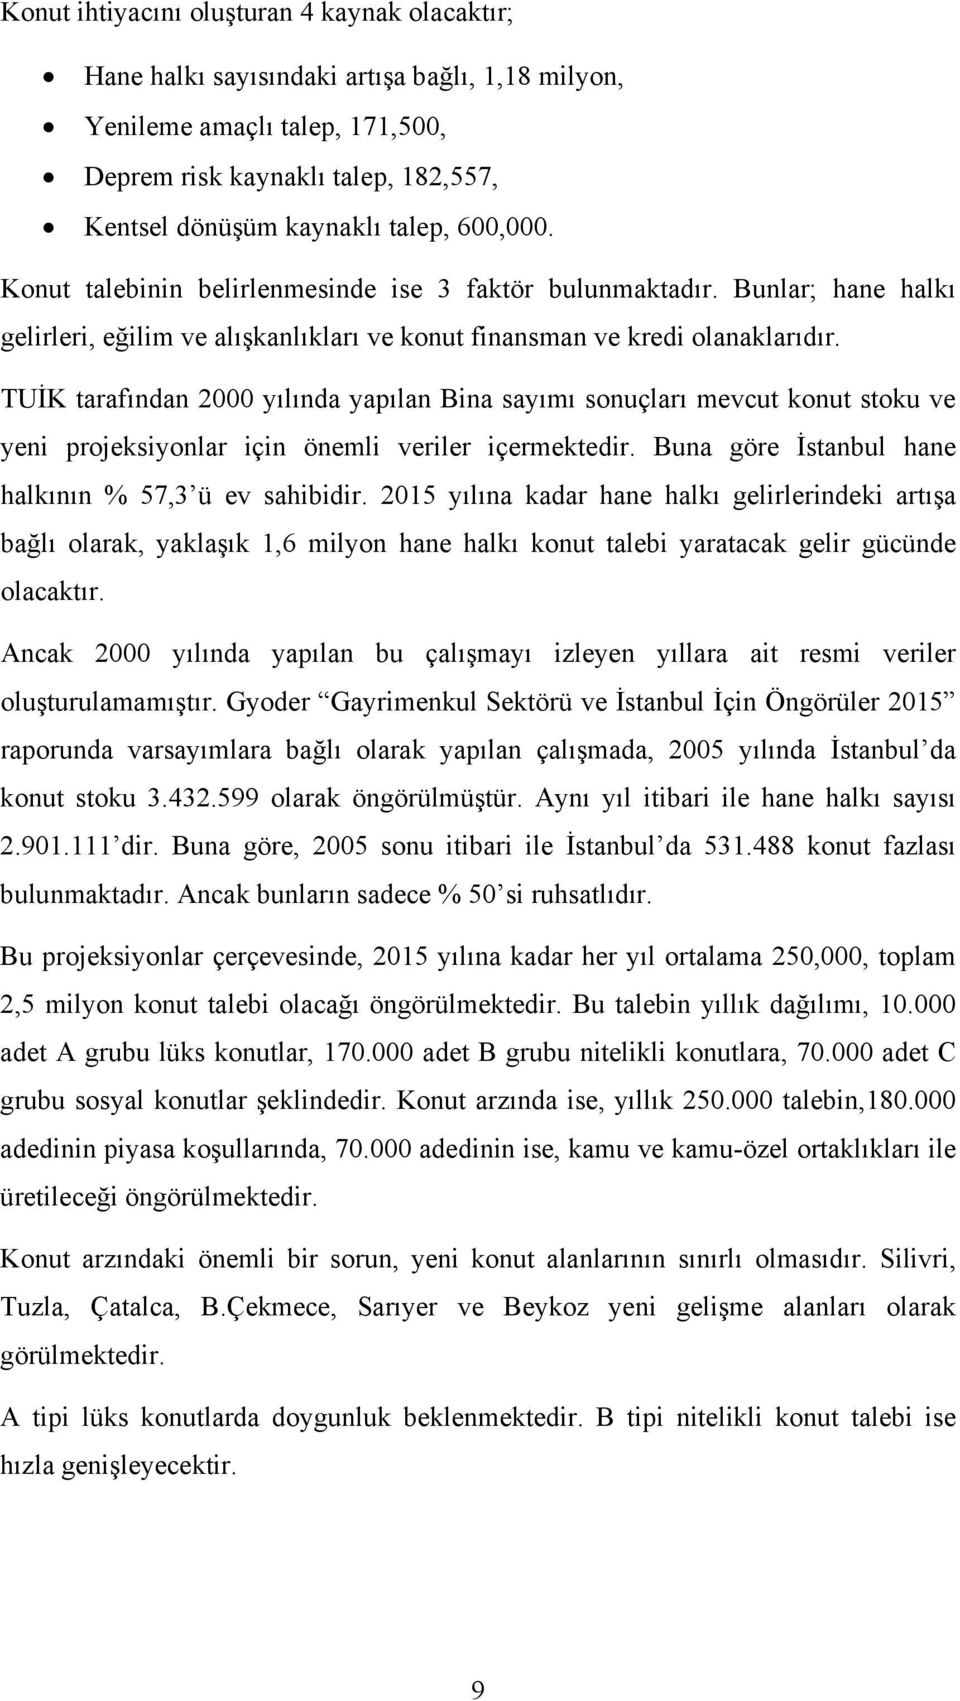 TUİK tarafından 2000 yılında yapılan Bina sayımı sonuçları mevcut konut stoku ve yeni projeksiyonlar için önemli veriler içermektedir. Buna göre İstanbul hane halkının % 57,3 ü ev sahibidir.